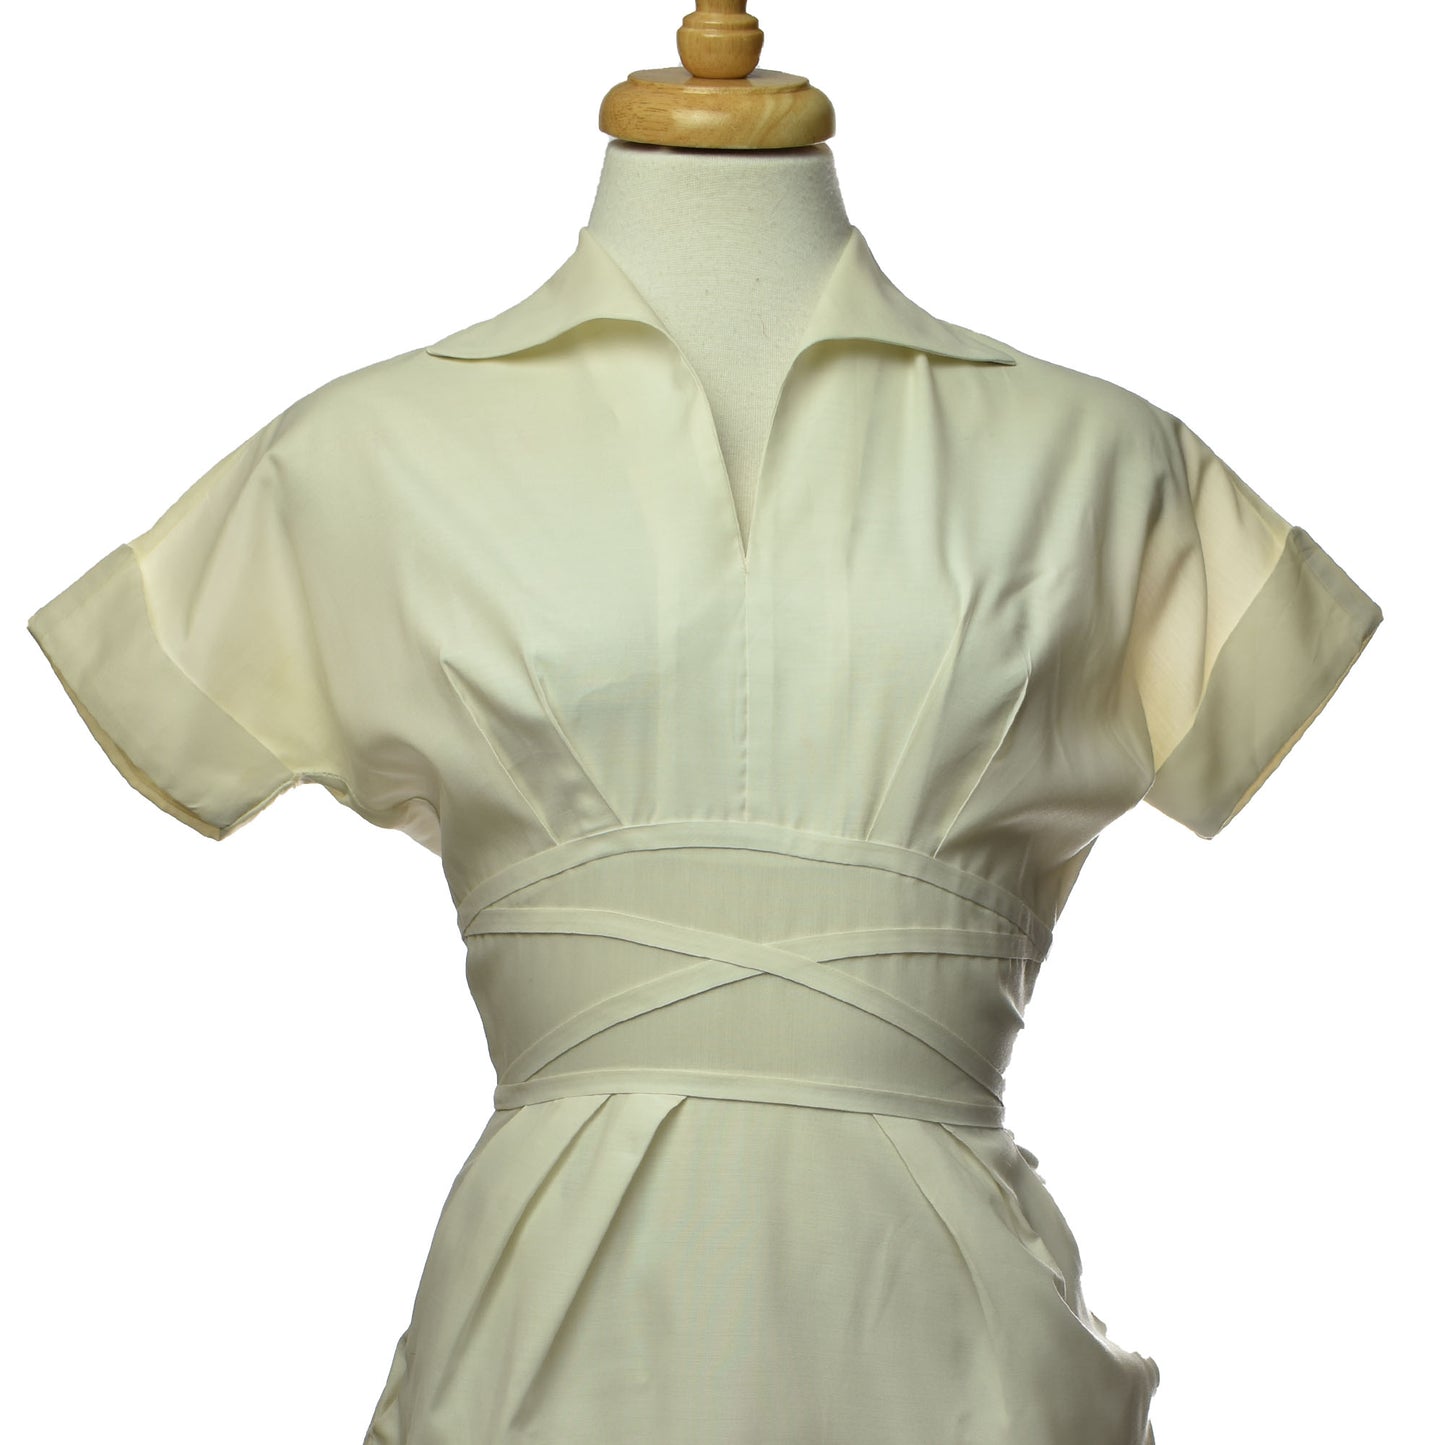 Vintage 70s Barco White Nurse Uniform Flash Zipper with Pockets Dress